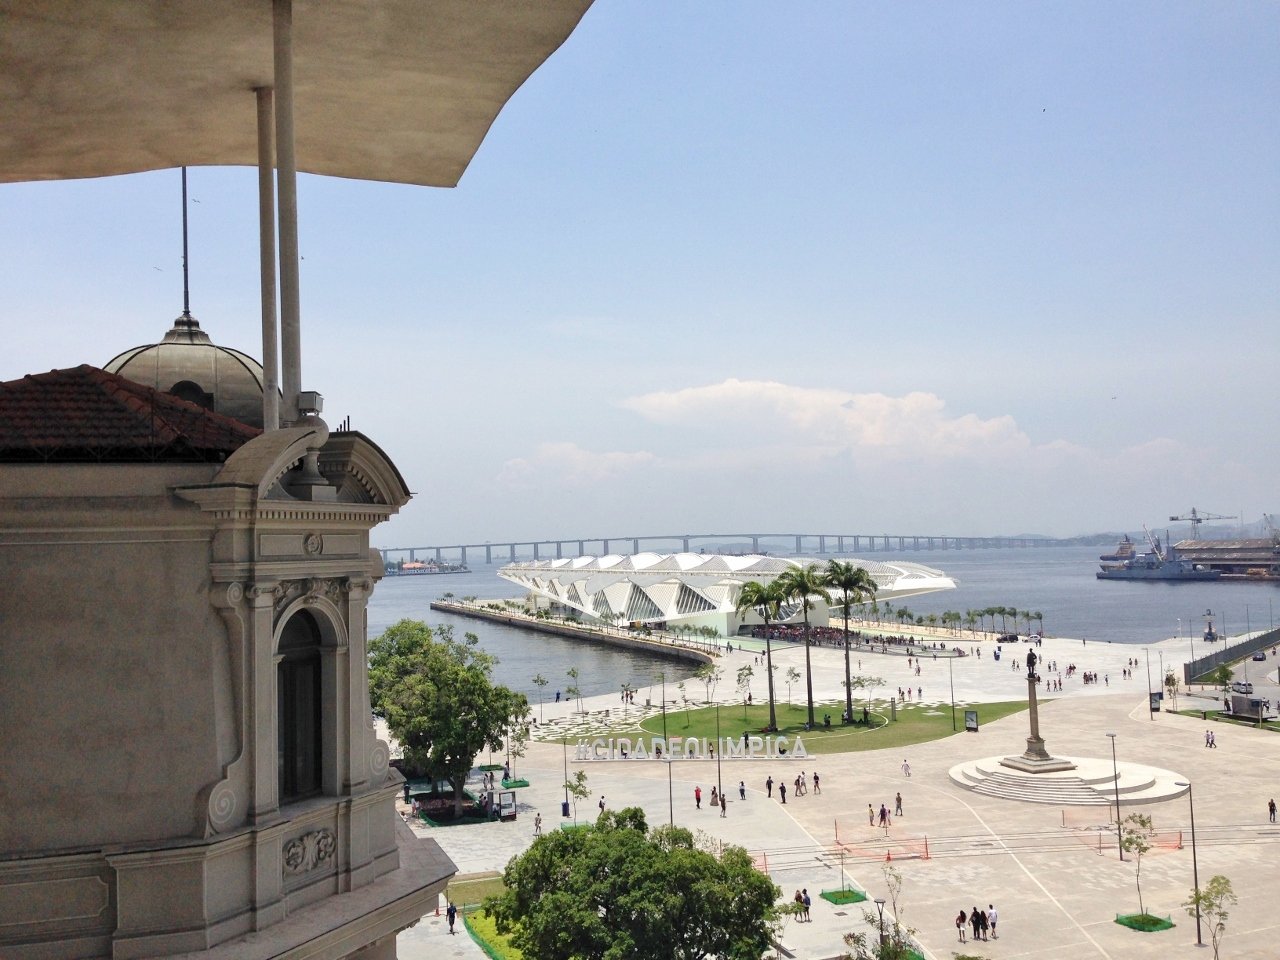 MAR, Museu de Arte do Rio, Vista, Visual, Praça Mauá - Foto Nathalia Molina @ComoViaja (4)